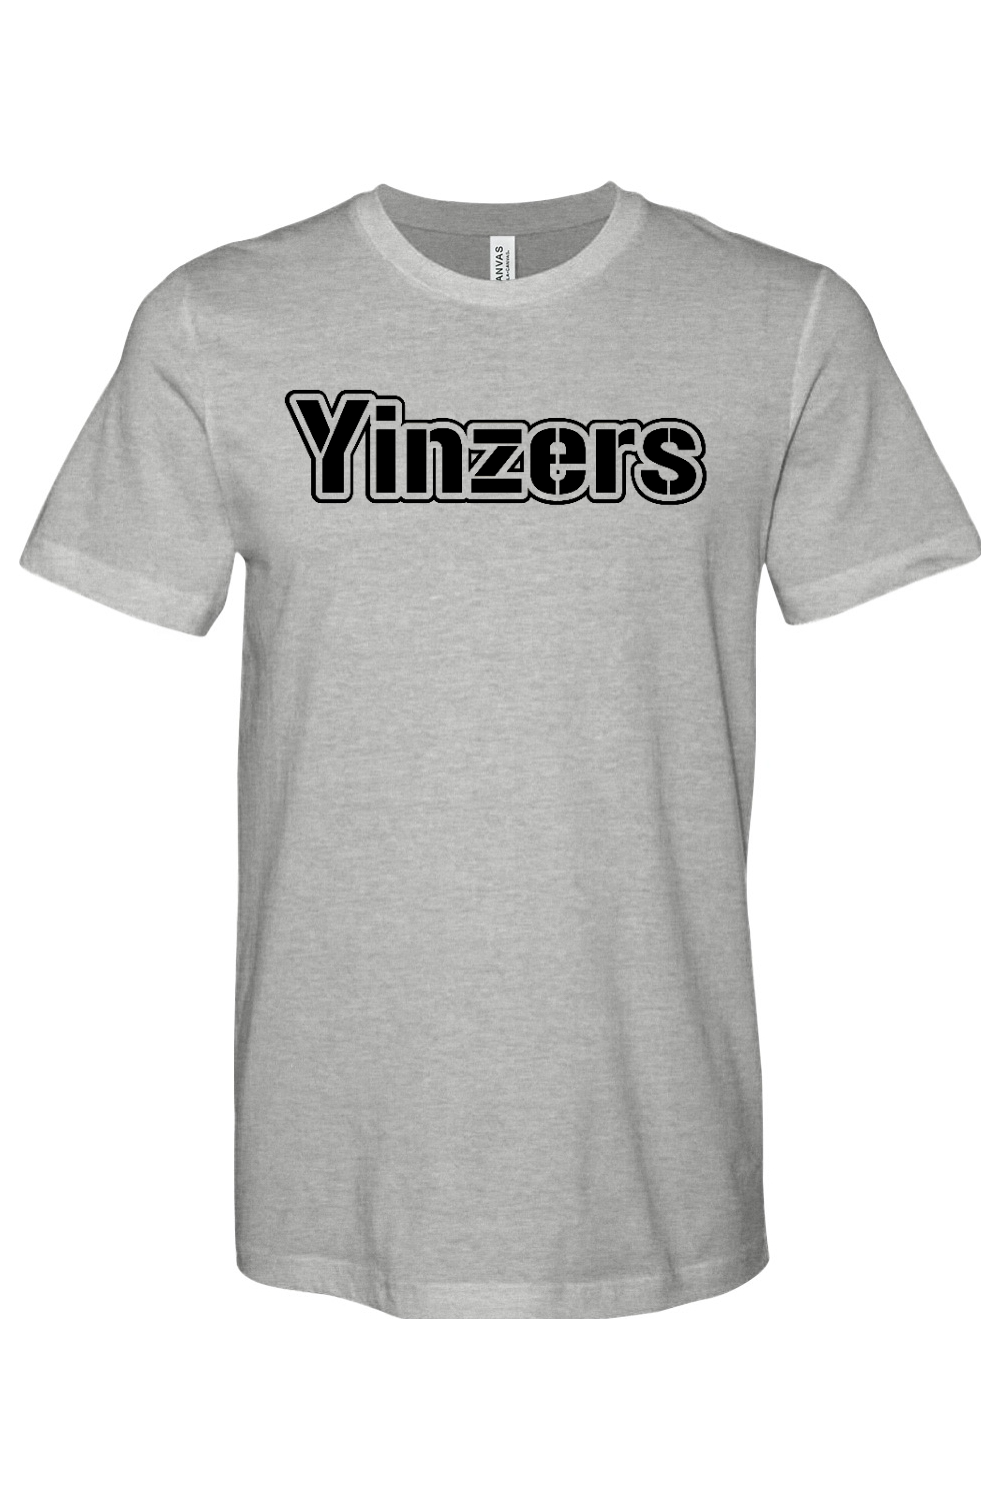 Yinzers Steel - Yinzylvania